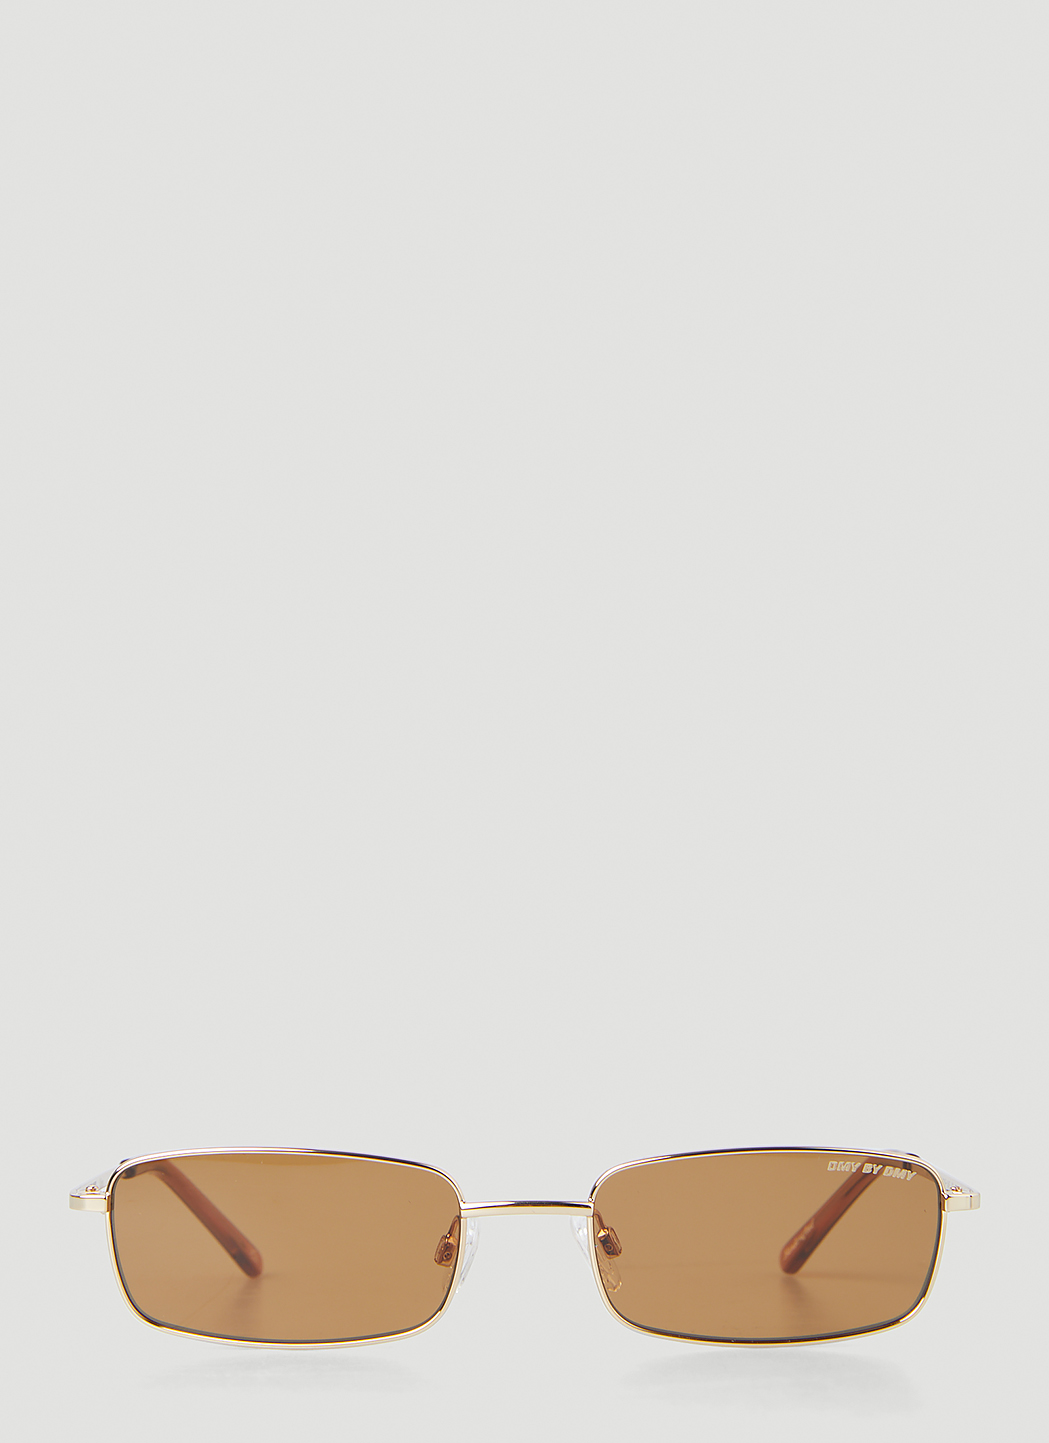 Olsen Sunglasses